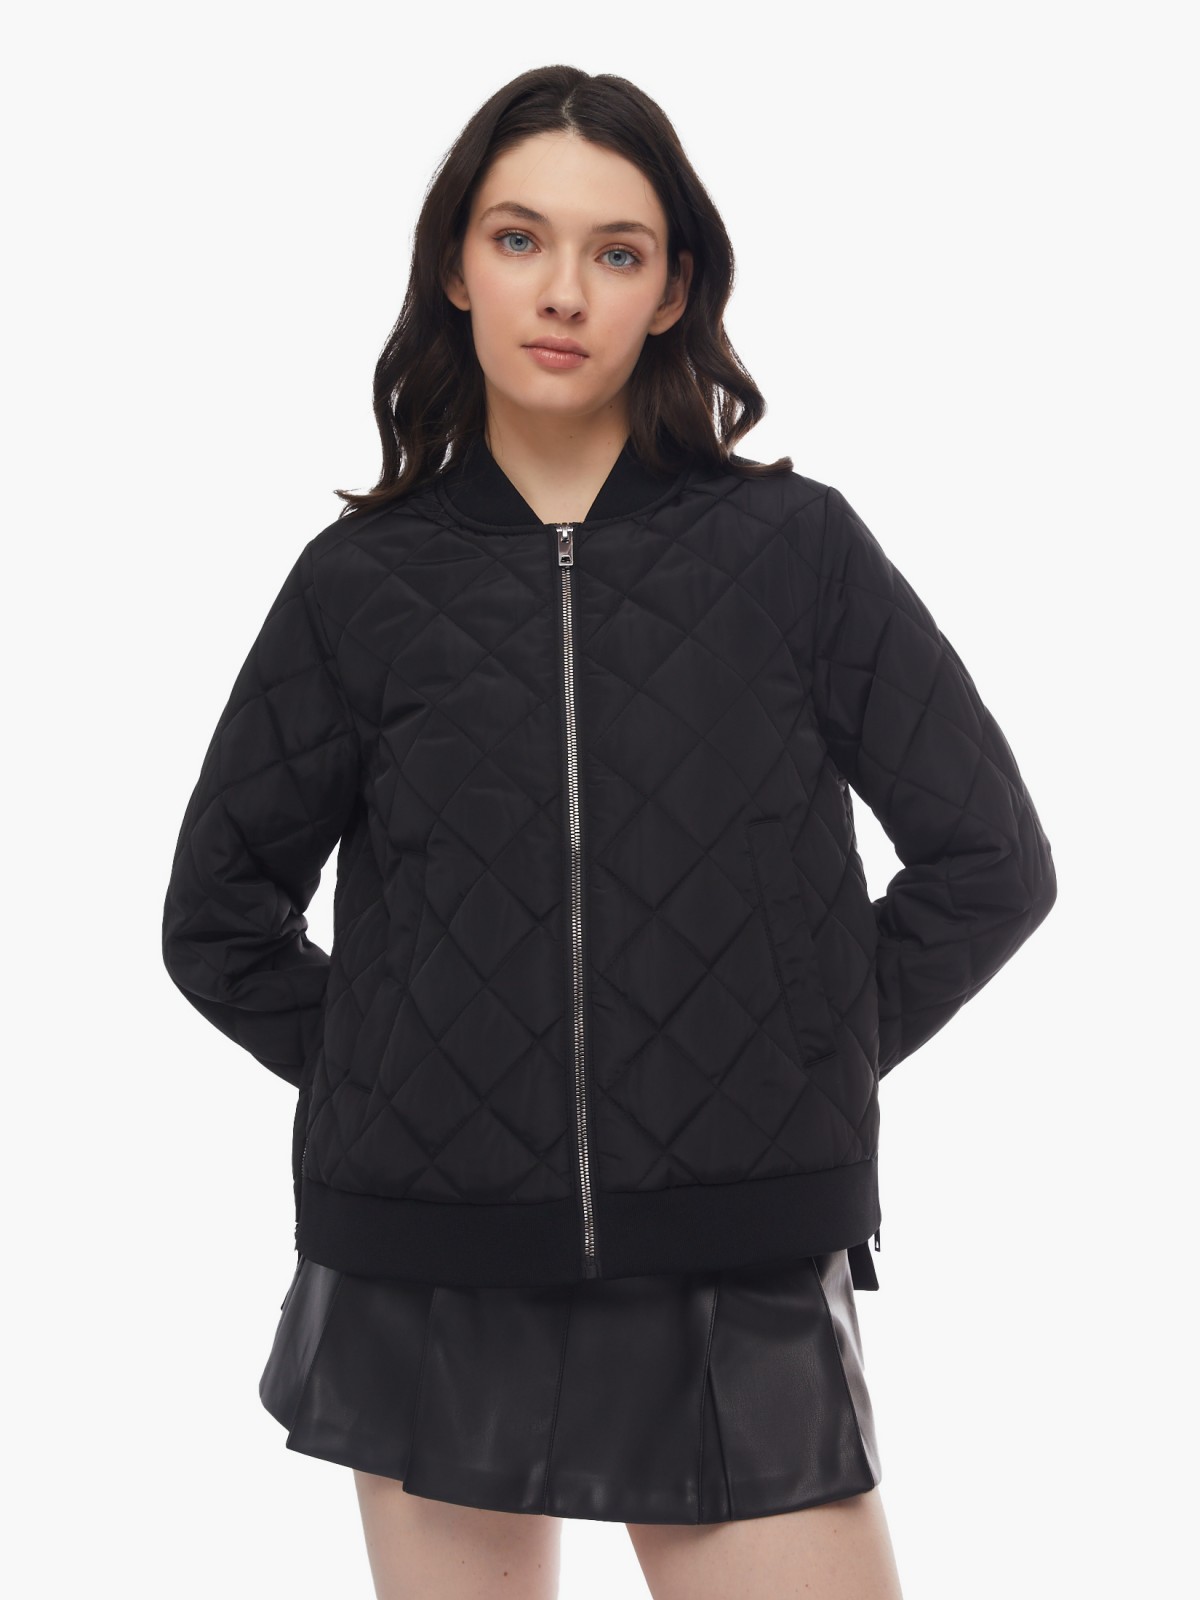 Тёплая куртка-бомбер на синтепоне со стёжкой zolla 024125102224, цвет черный, размер XS - фото 4